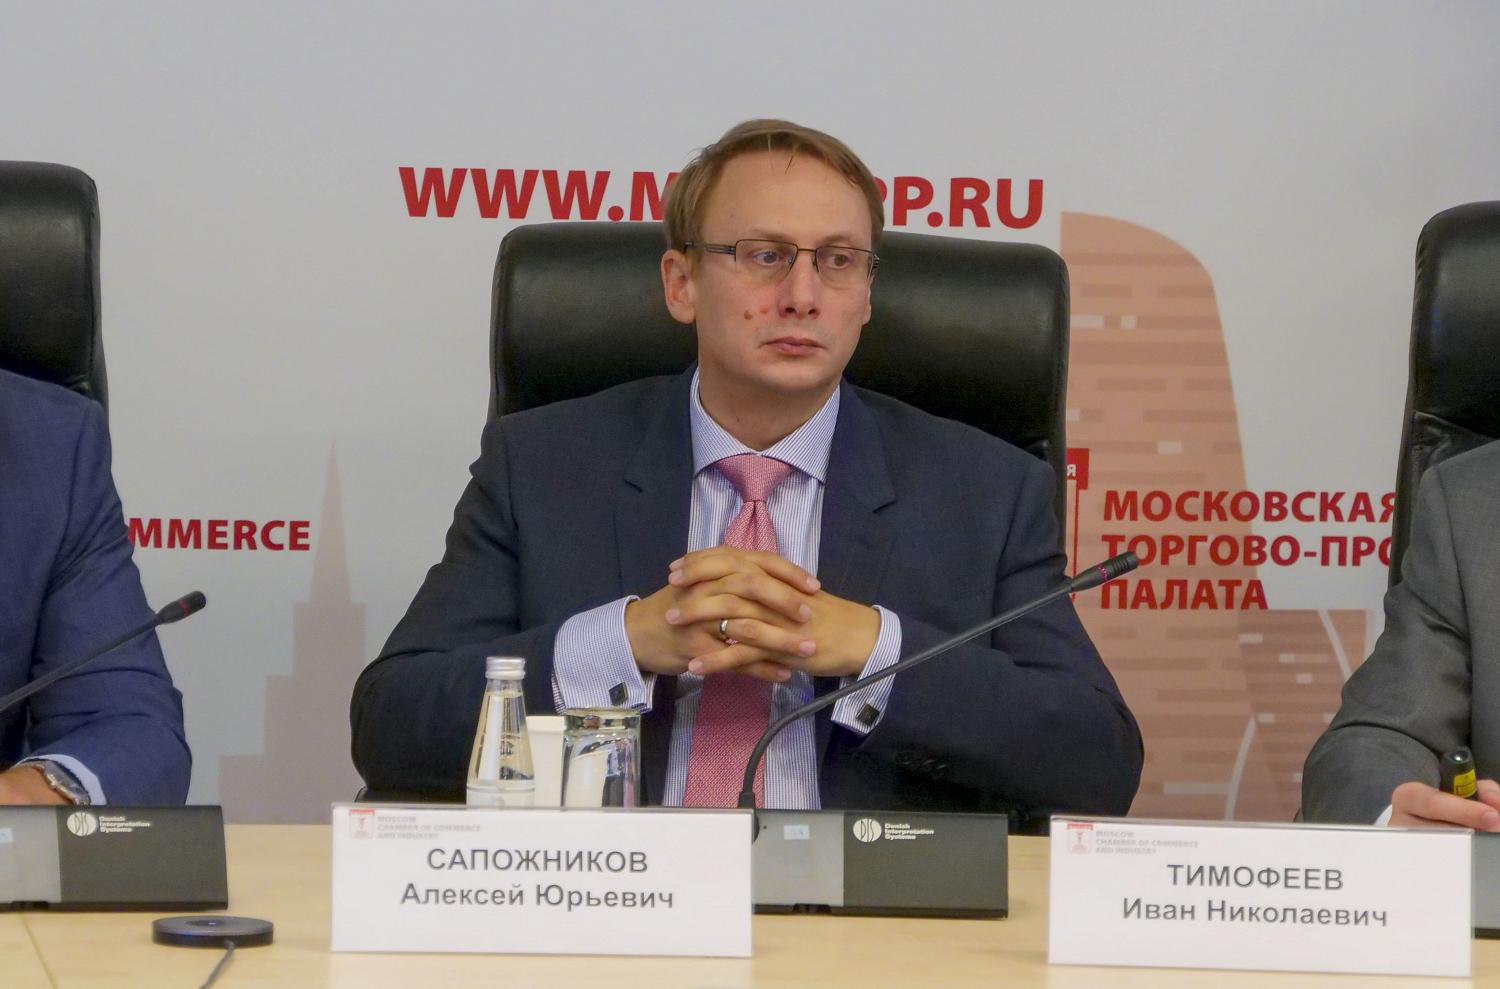 Участники ВЭД рассмотрели правовые аспекты экспортного контроля в отношении российского бизнеса